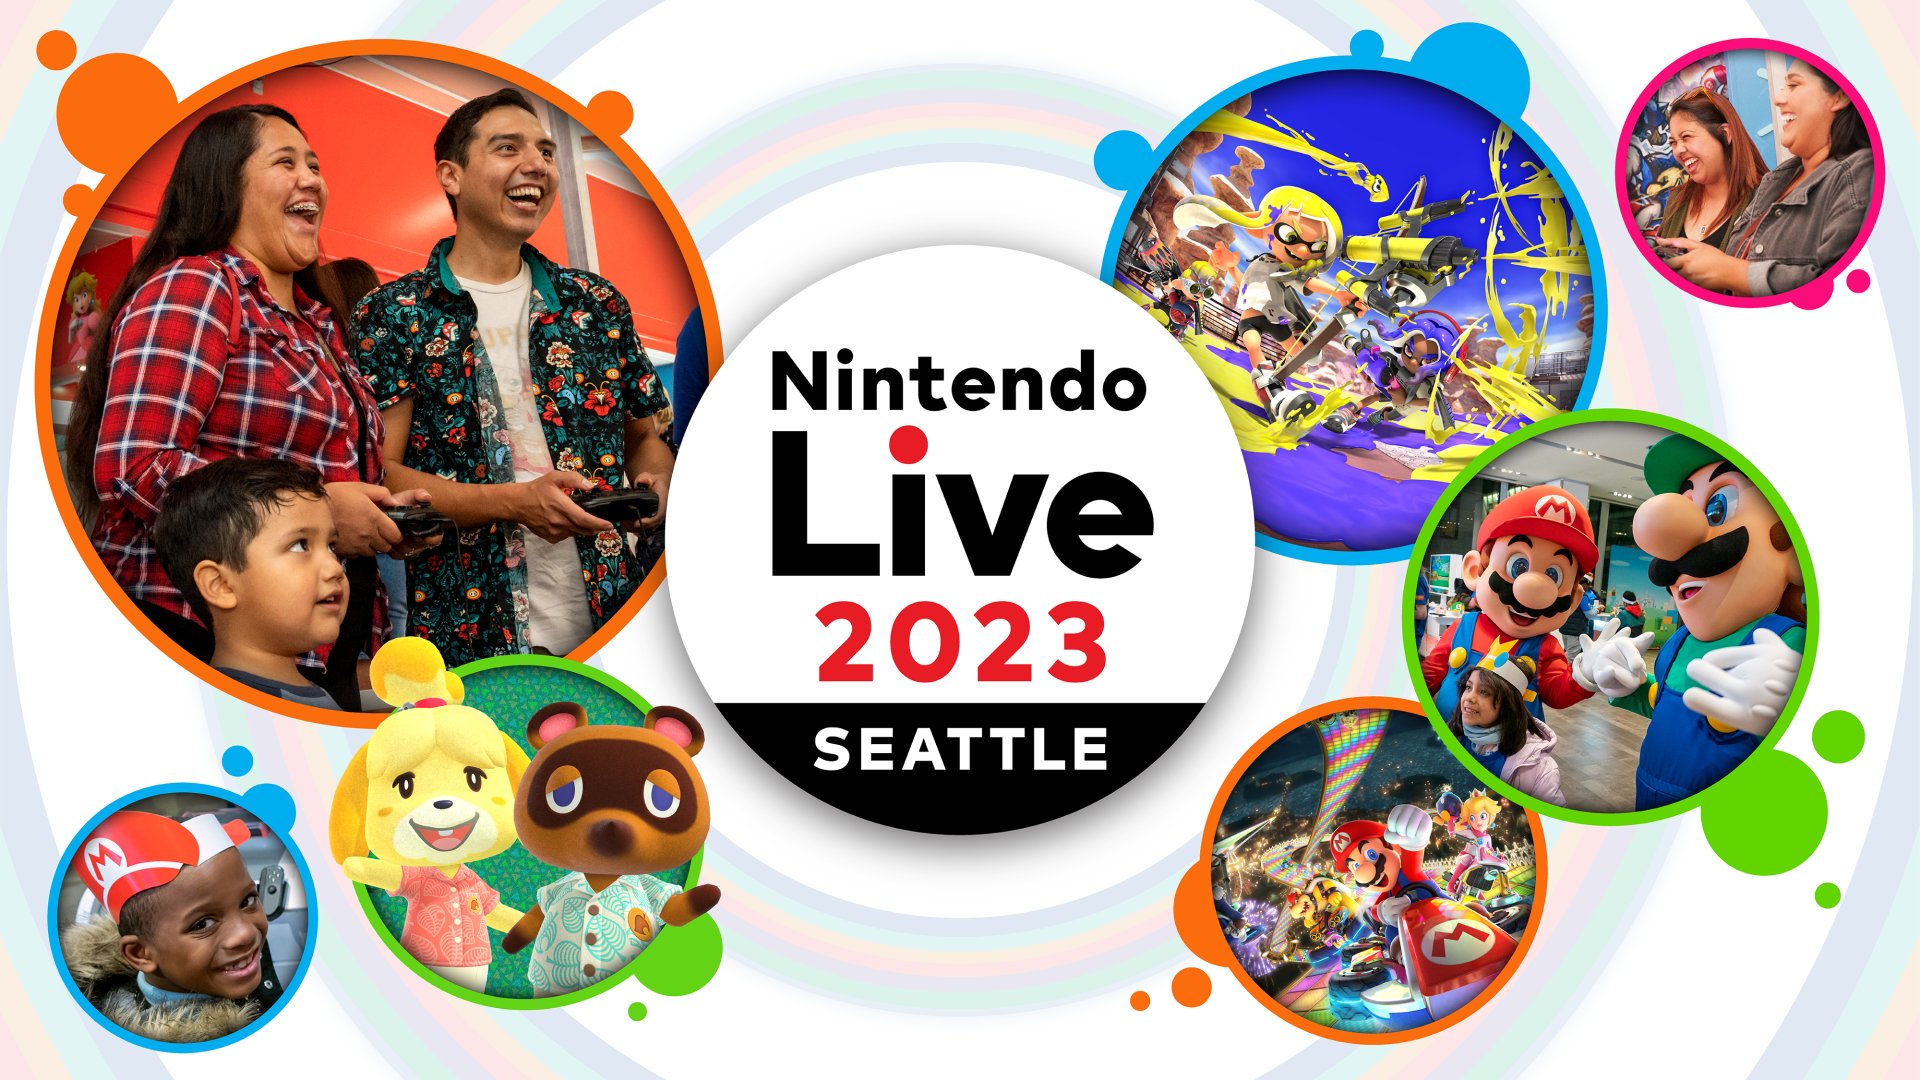 Anunciando o Nintendo Live 2023 Seattle